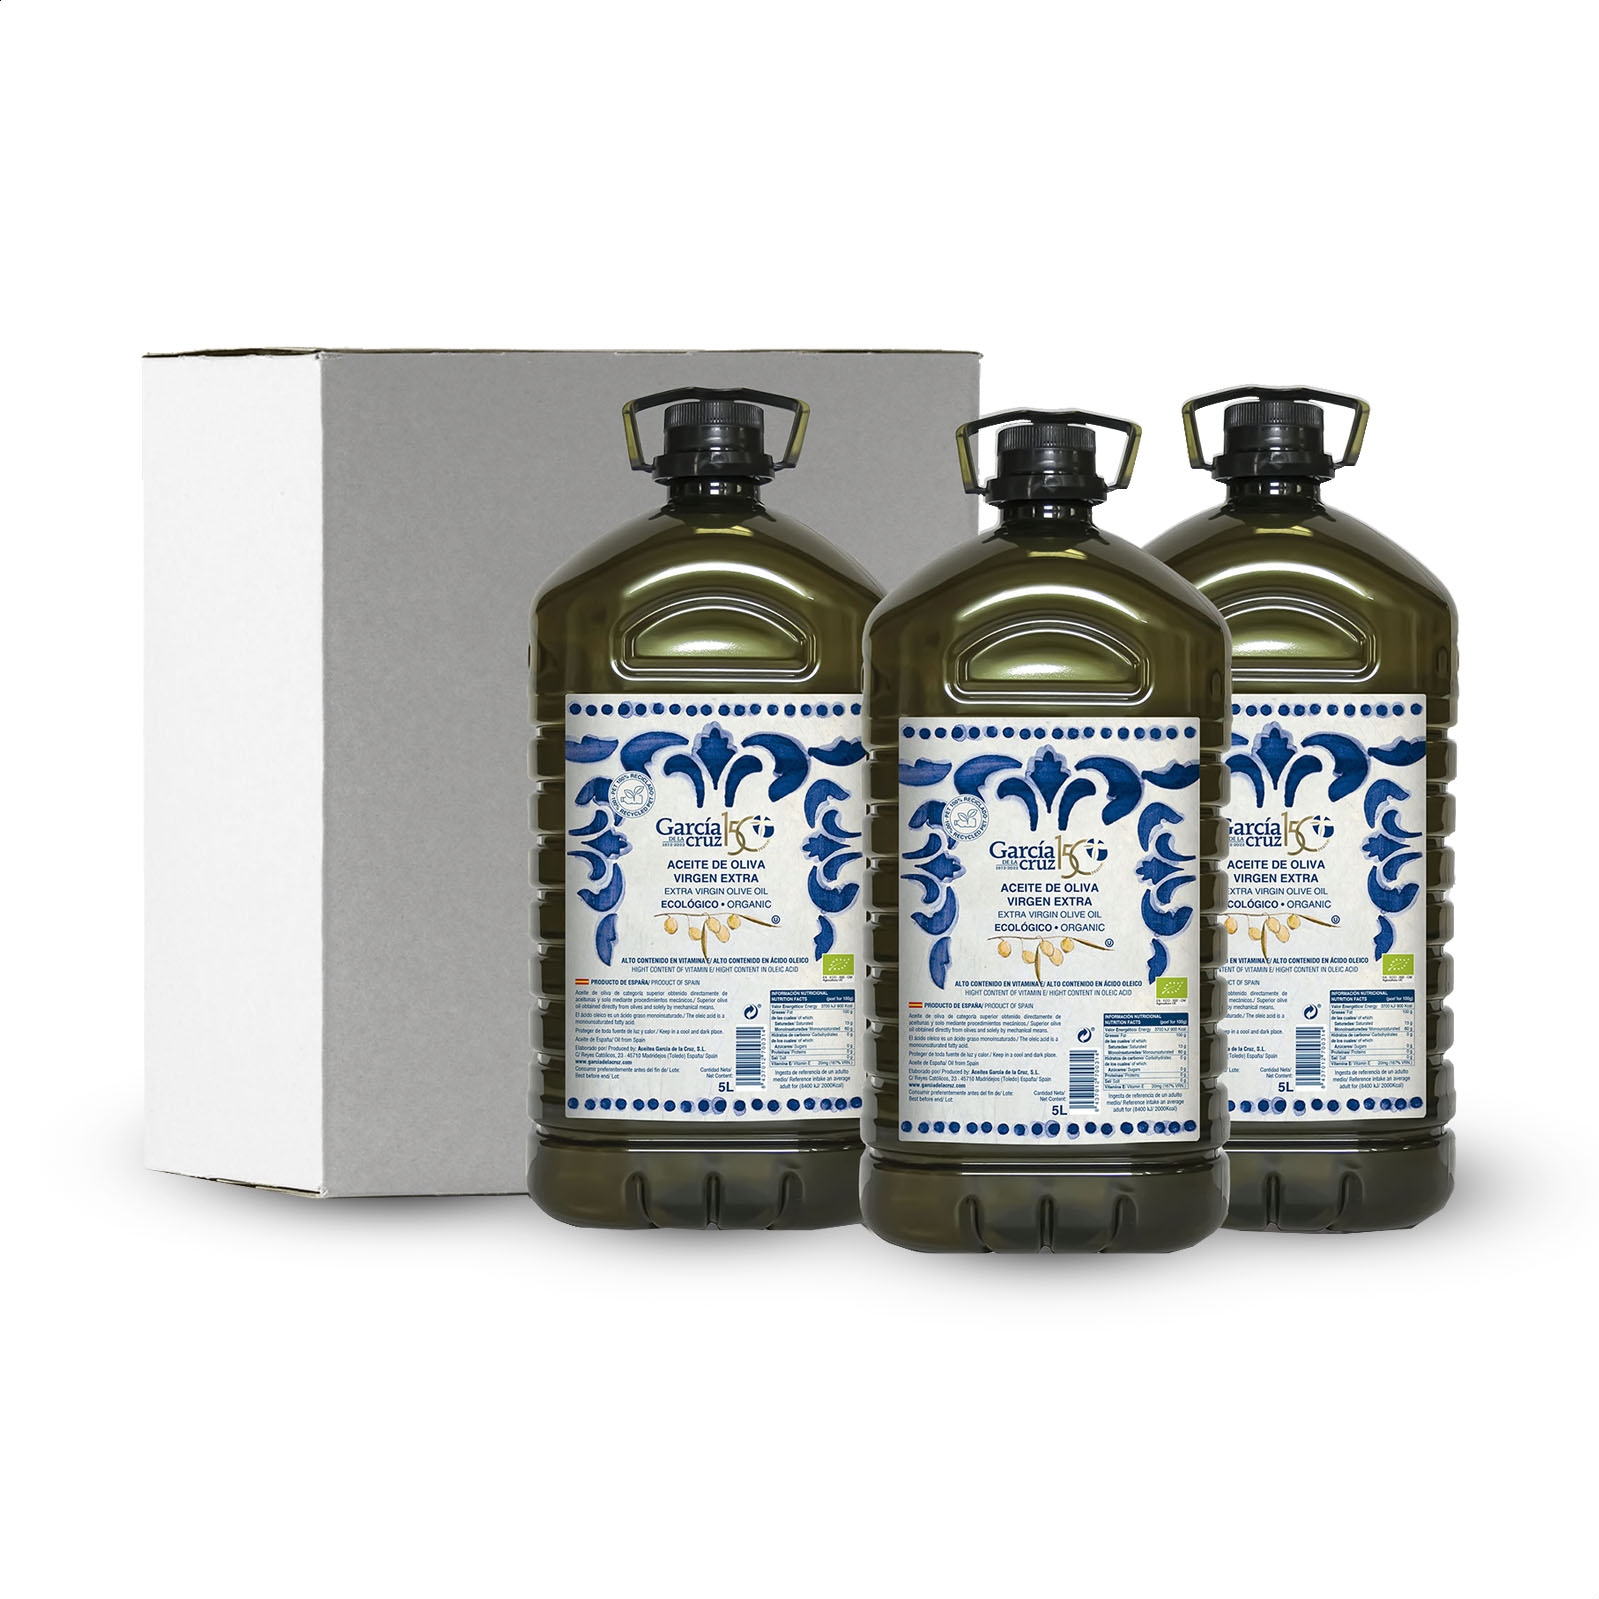 García de la Cruz - Aceite de oliva virgen extra ecológico en garrafa 5L, 3uds